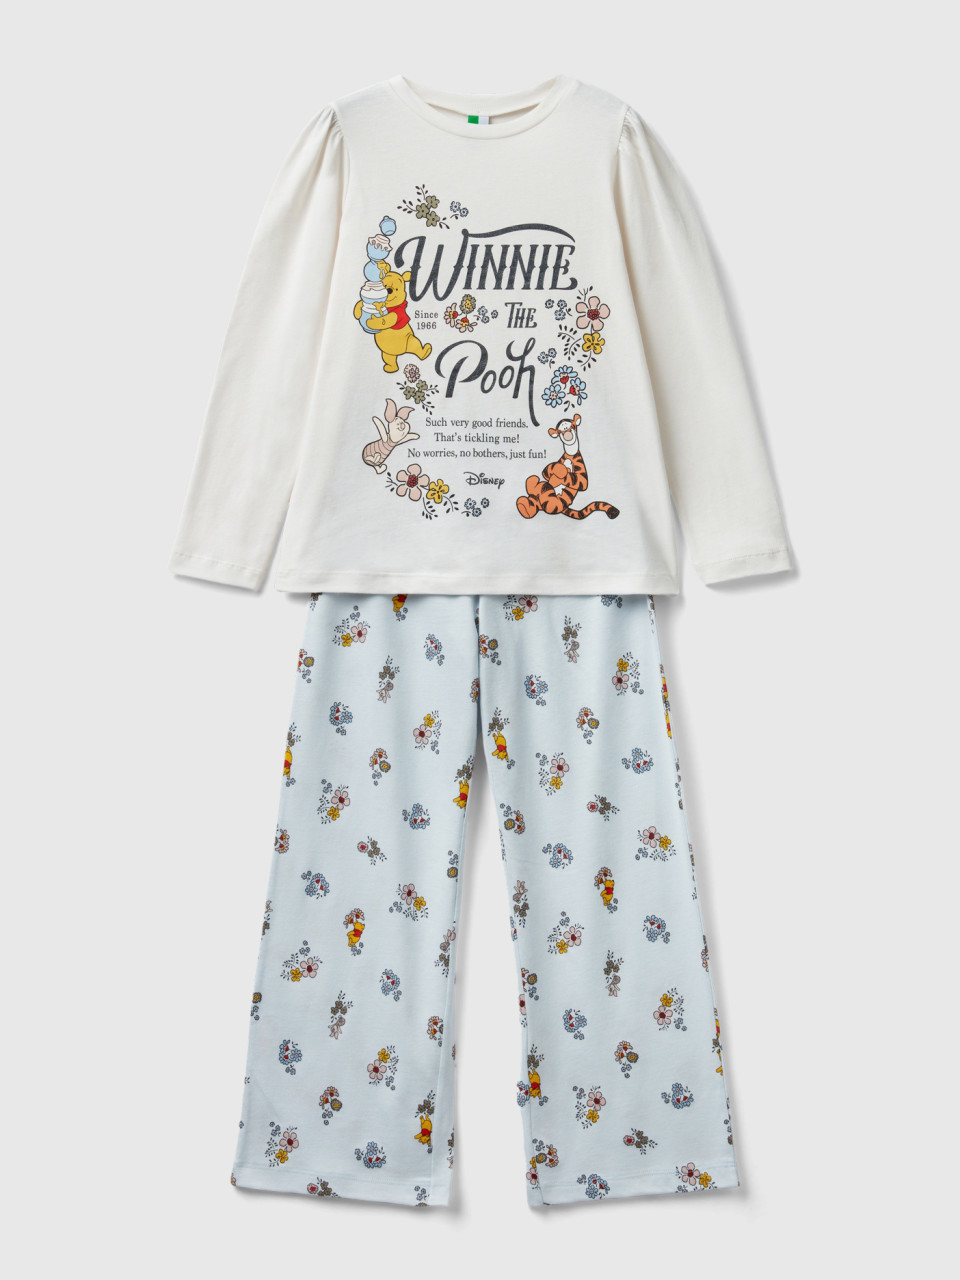 Benetton, Langer Pyjama Mit ©disney Winnie The Pooh, Cremeweiss, female